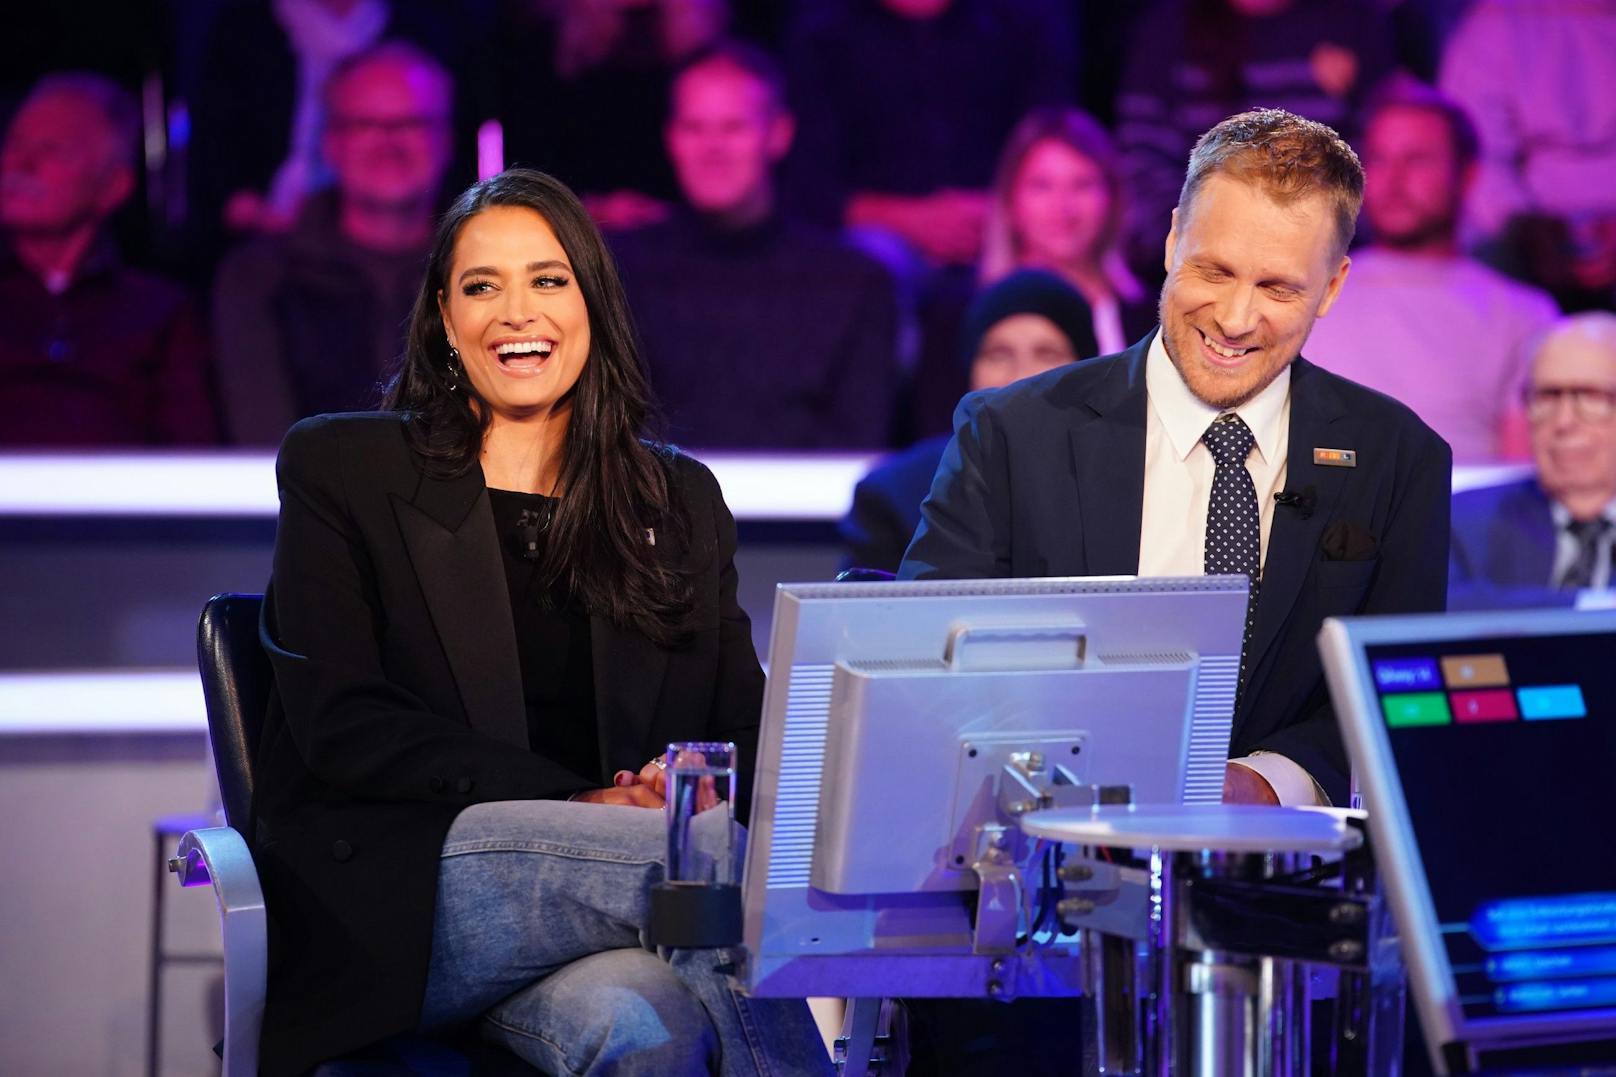 Auf den offiziellen Bildern zur RTL-Quizshow sieht man die Pochers trotz Trennung gemeinsam lachen.